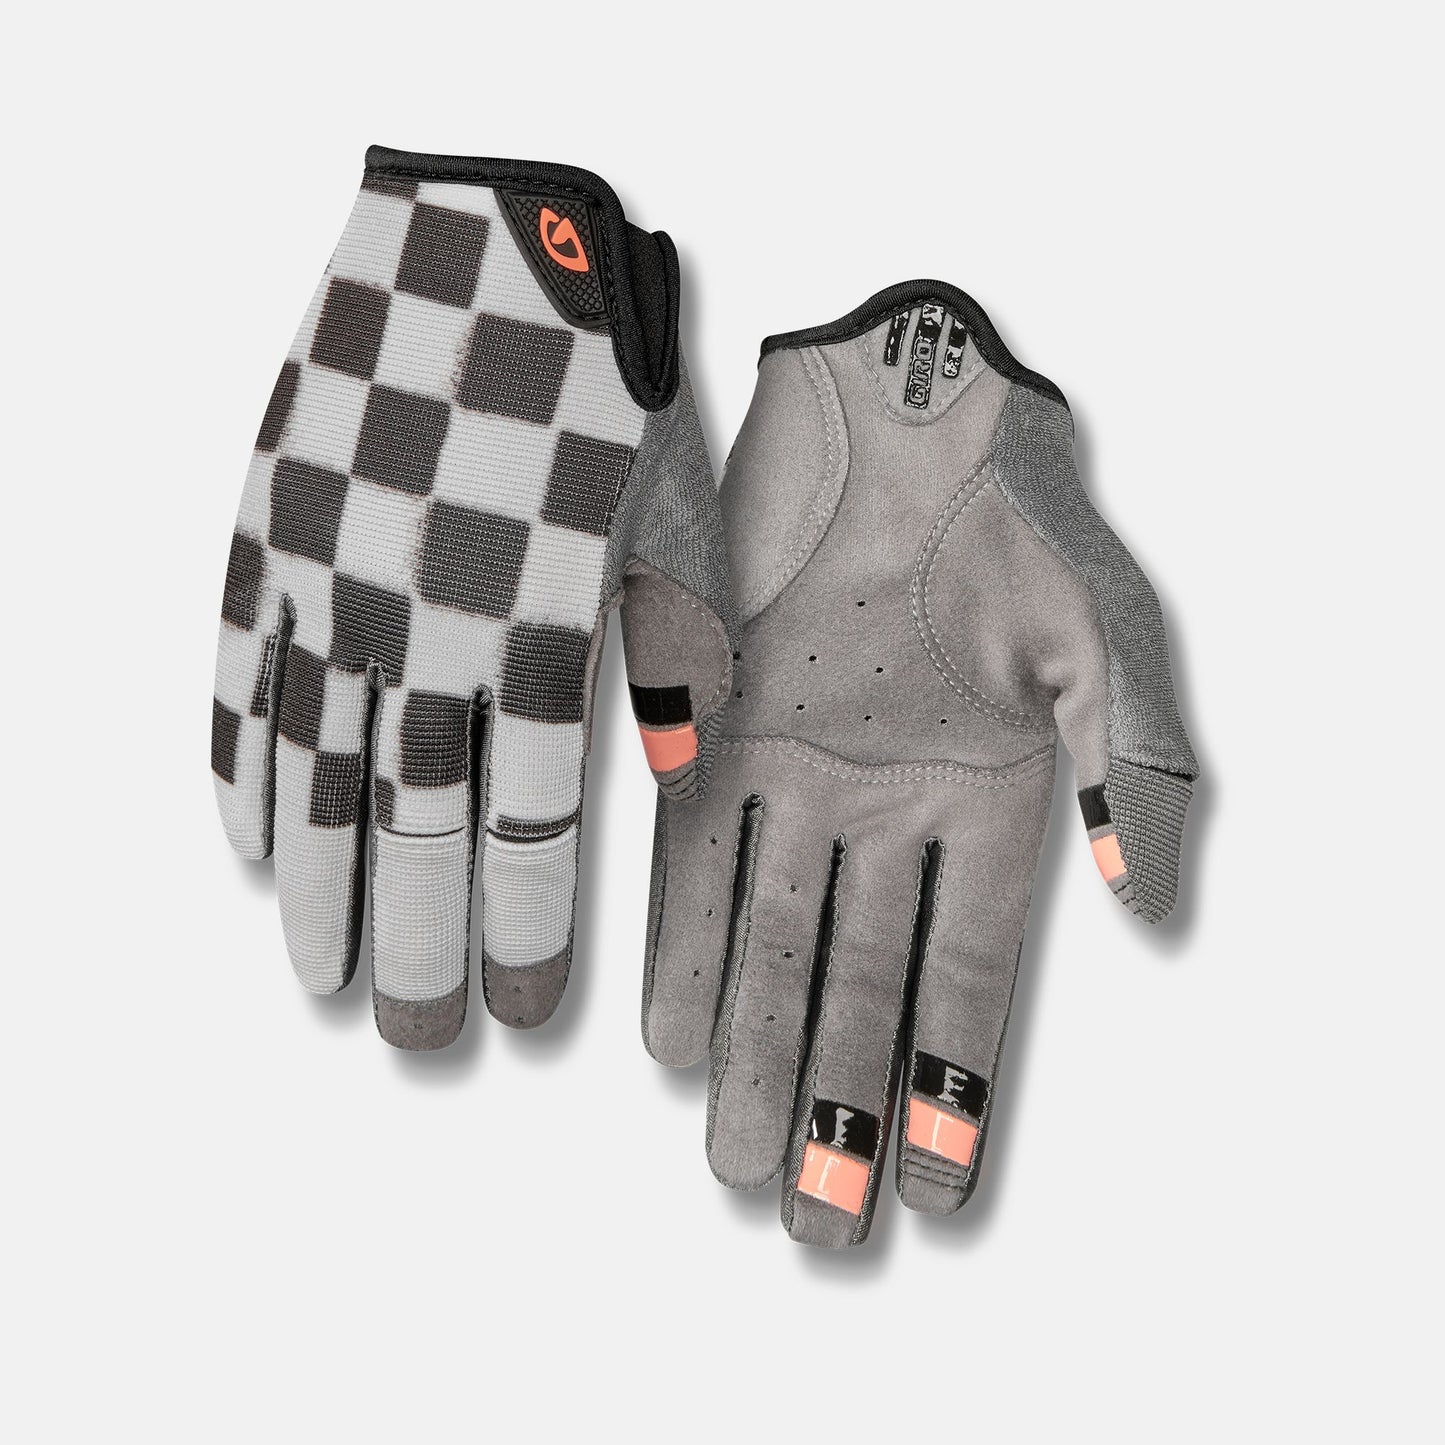 Giro La DND Womens Dirt Gloves - Checkered/Peach - Size S